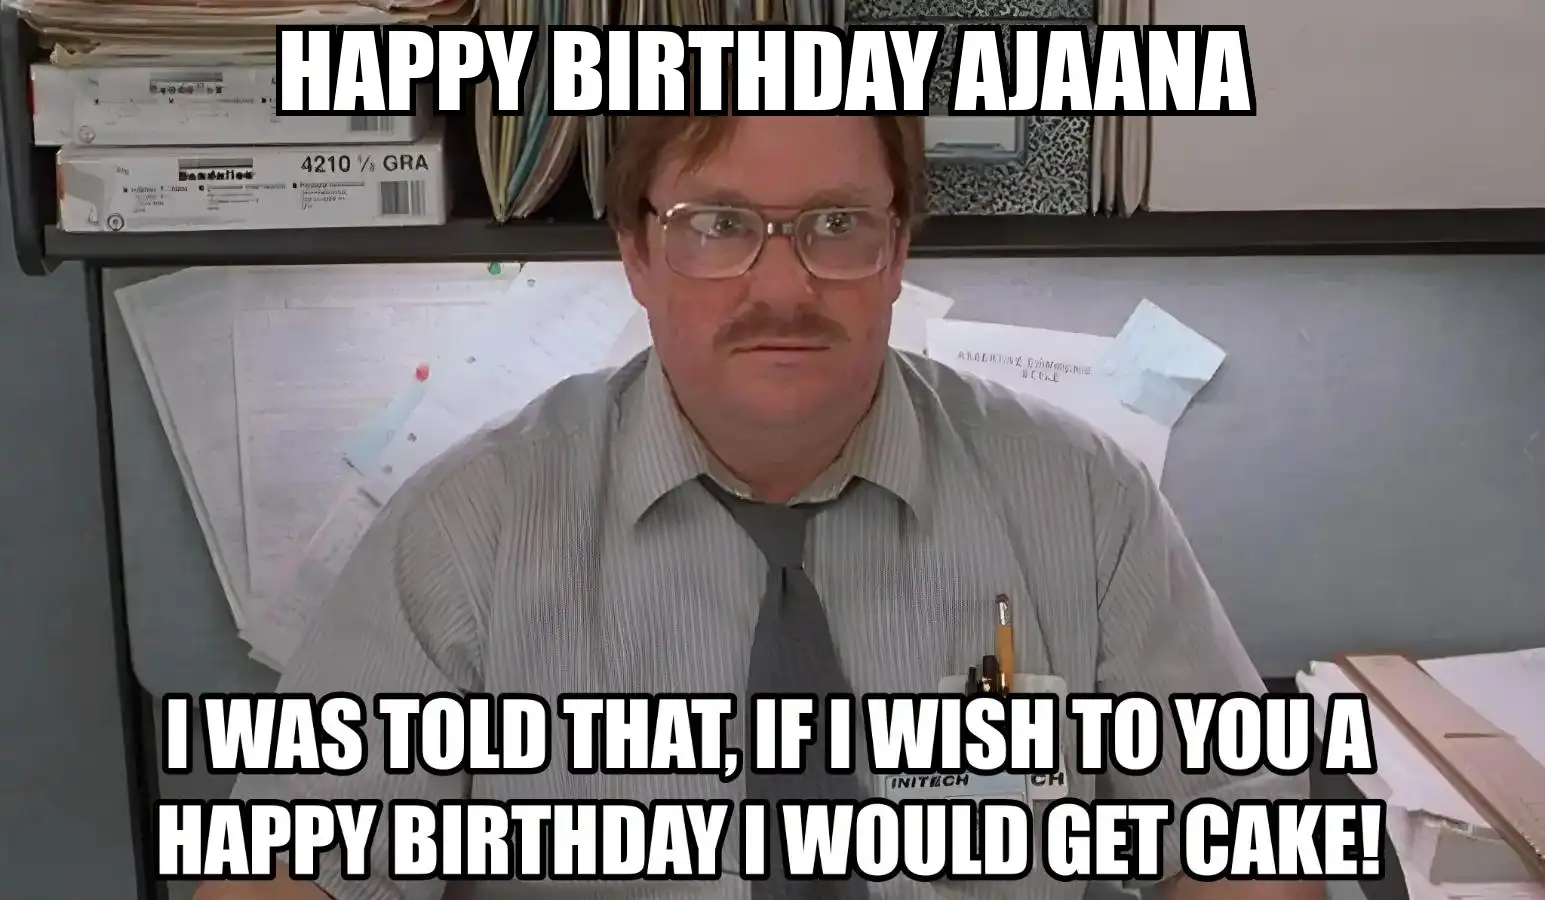 Happy Birthday Ajaana I Would Get A Cake Meme